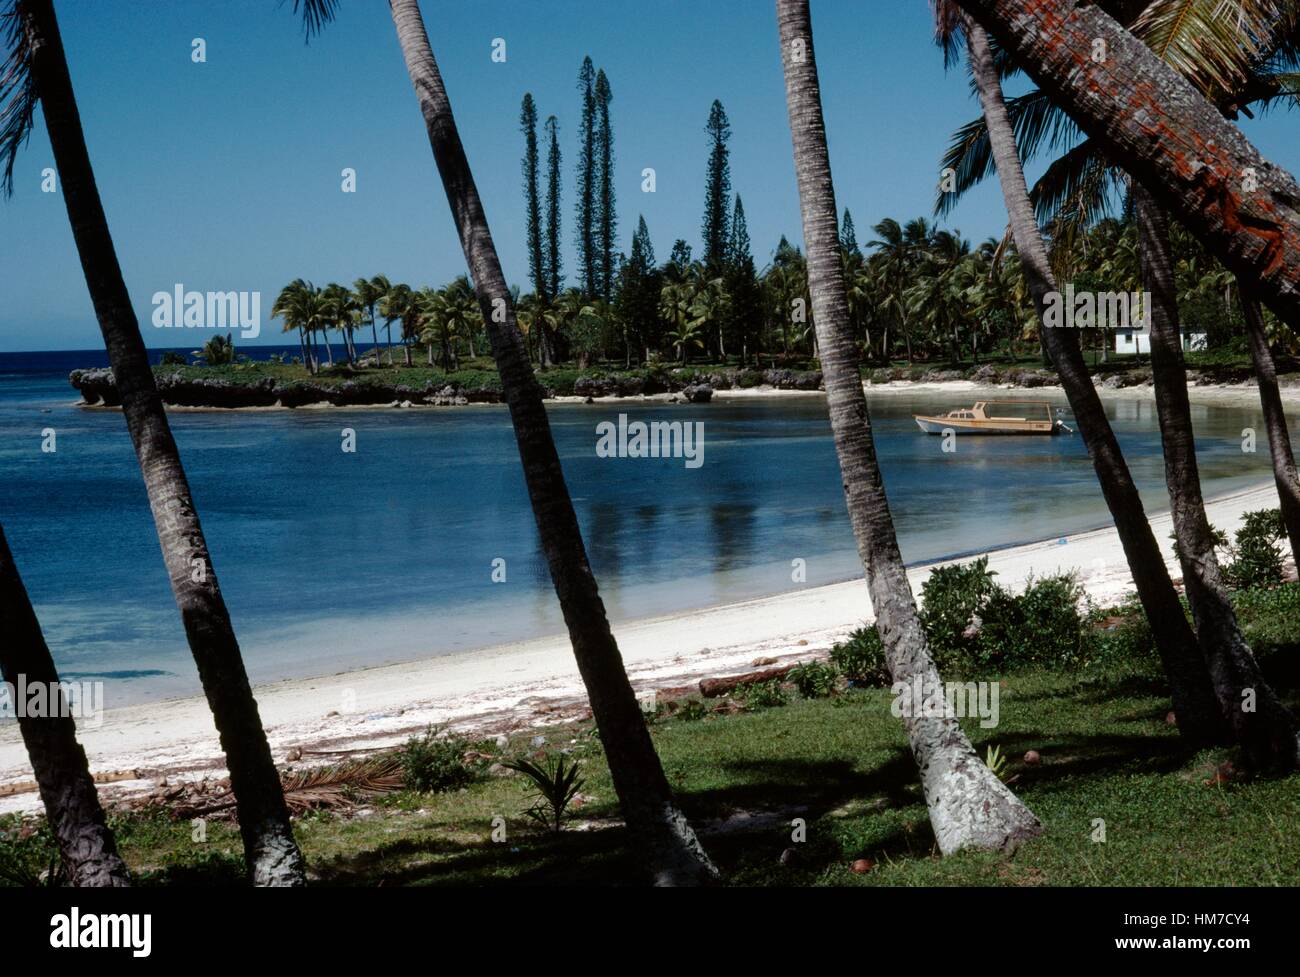 Le palme e la barca sulla spiaggia Doueoulou, Lifou, Isole della Lealtà, Nuova Caledonia, territorio di oltremare della Repubblica francese. Foto Stock